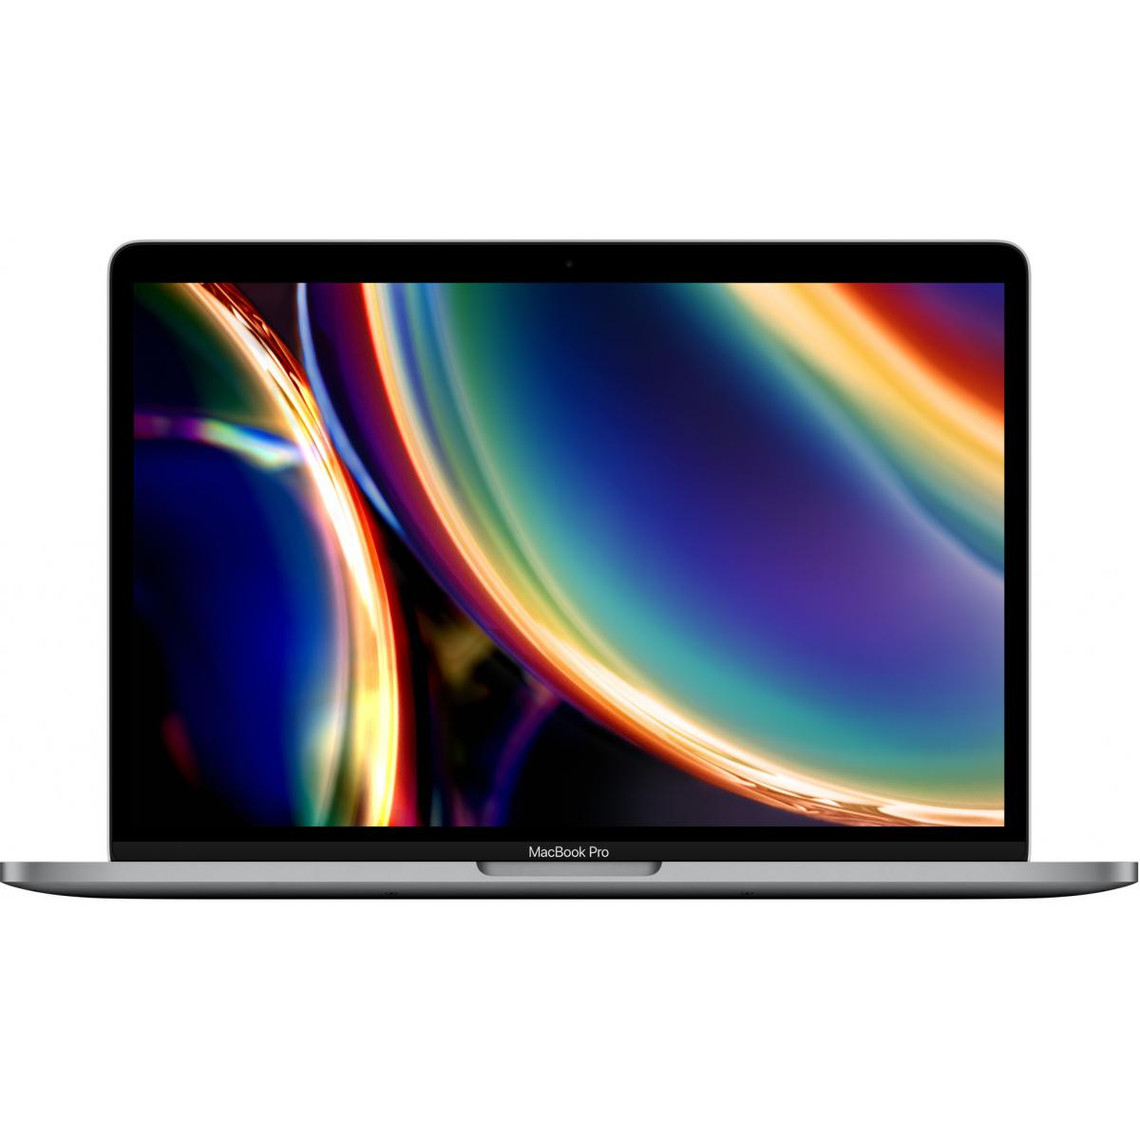 Les avantages du Apple MacBook Pro 13 2020 (MWP42FN/A) sont :   Ecran Retina 13,3" avec technologie True Tone Magic Keyboard rétroéclairé et Touch ID Processeur Intel Core i5 de 10ème génération Stockage SSD de 512 Go et mémoire vive de 16 Go LPDDR4X  Quatre ports Thunderbolt 3 (USB-C) Autonomie pouvant atteindre 10 heures               Retrouvez toute notre offre en Apple MacBook sur RueduCommerce.fr. Découvrez la boutique Ordinateur Apple de RueduCommerce.fr.    Processeur Intel Core i5 quadricœur de 10e génération (2,0 GHz / 3,8 GHz Turbo Boost) - Écran Retina 13,3" True Tone - Touch Bar et Touch ID - Clavier Magic Keyboard rétroéclairé